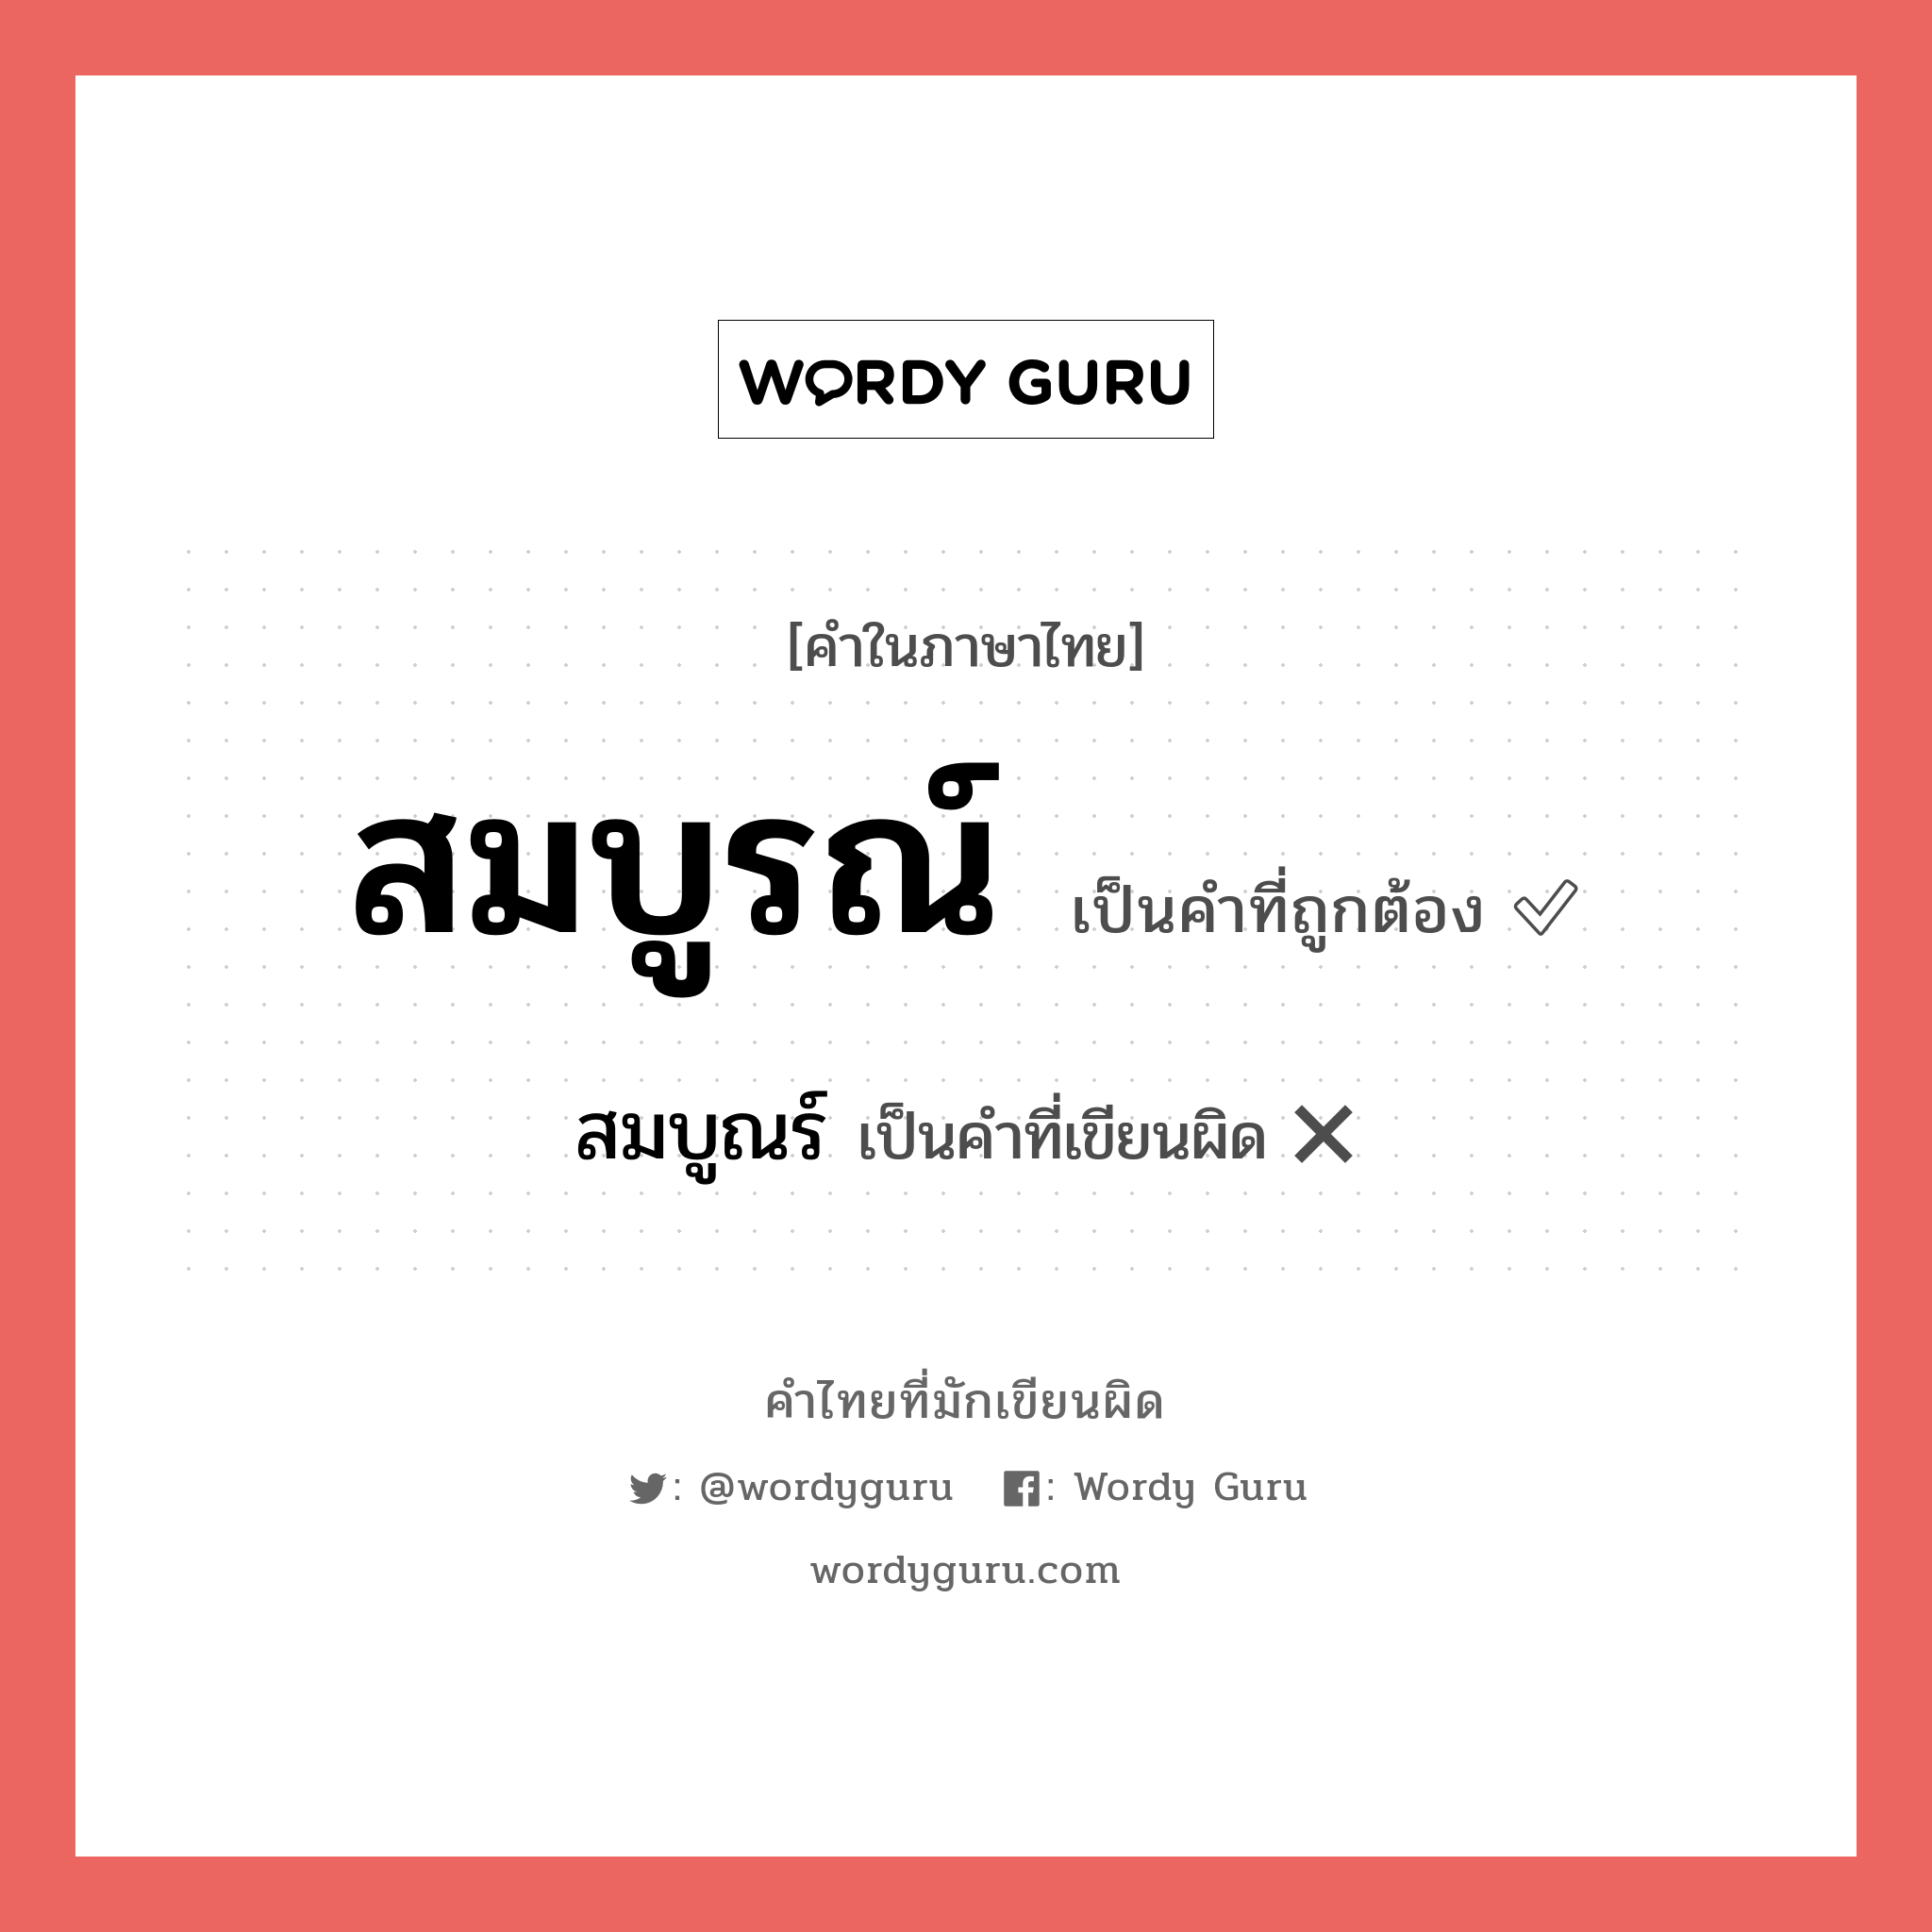 สมบูณร์ หรือ สมบูรณ์ คำไหนเขียนถูก?, คำในภาษาไทยที่มักเขียนผิด สมบูณร์ คำที่ผิด ❌ สมบูรณ์